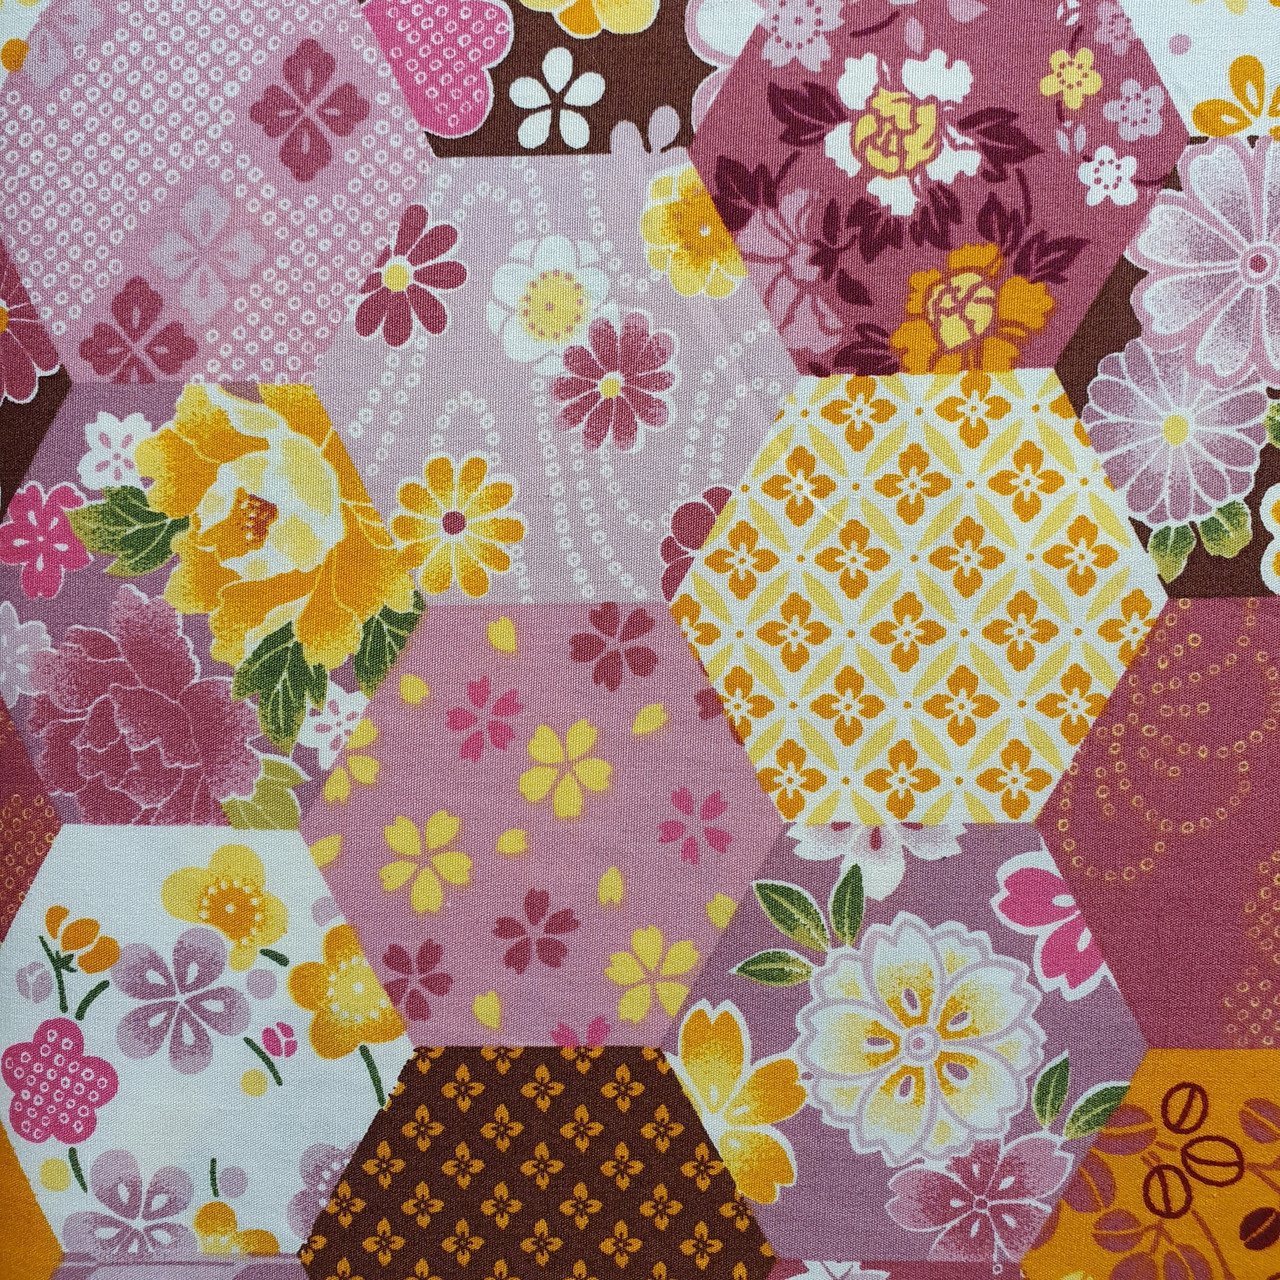 Plum Honeycomb "Hexie Quilt" 100% Cotton Poplin Fabric, 110cm/43in wide, Sold Per HALF Metre